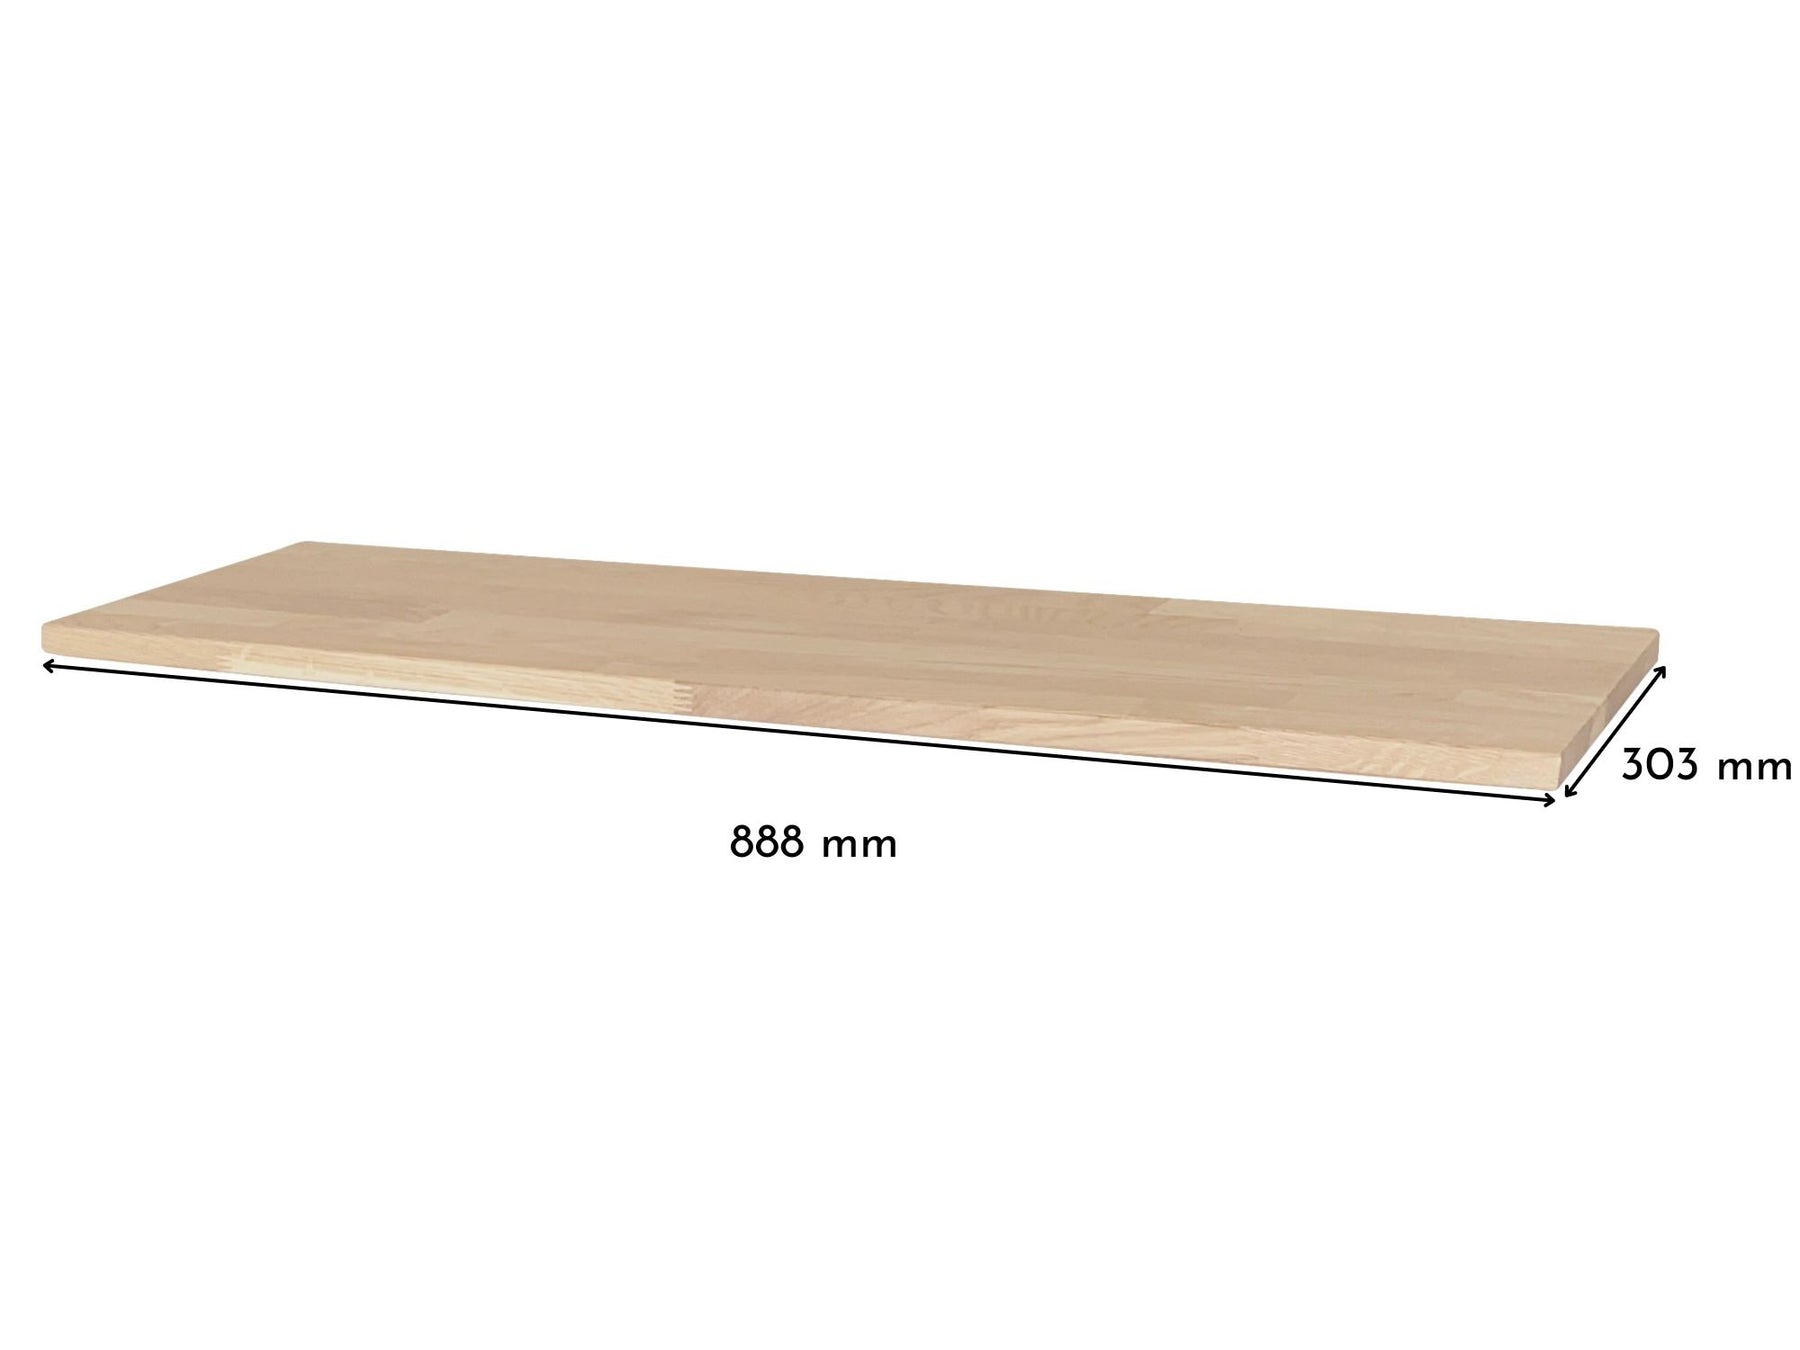 Deckplatte in Eiche Weiß für Ikea Hemnes Schuhschrank mit 2 Fächern